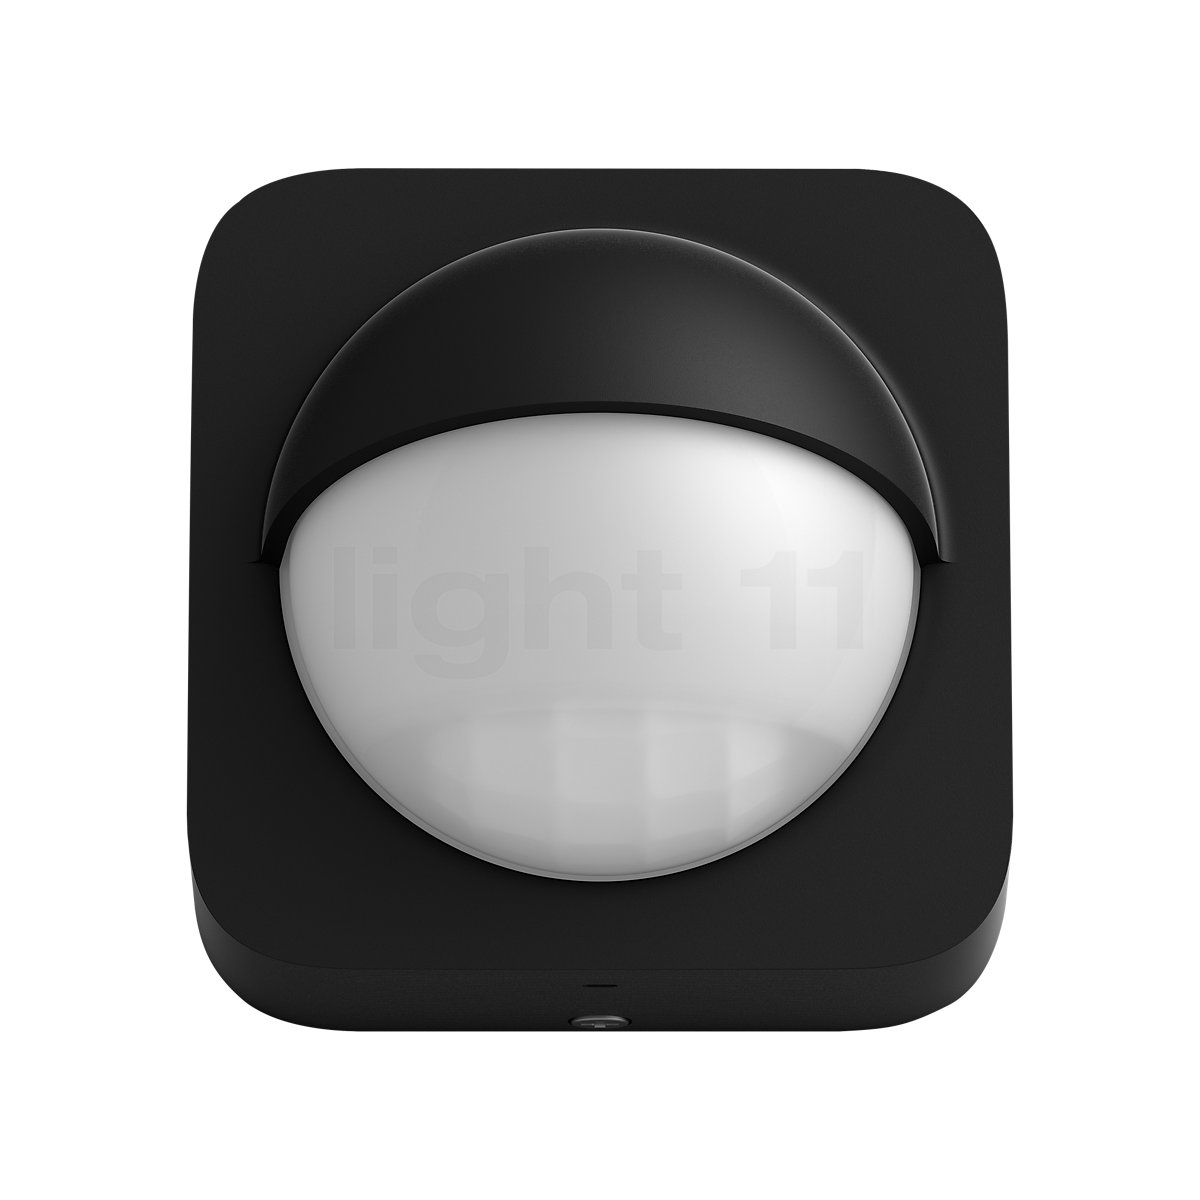 Philips Hue Sensore Di Movimento Per Esterni Light11it